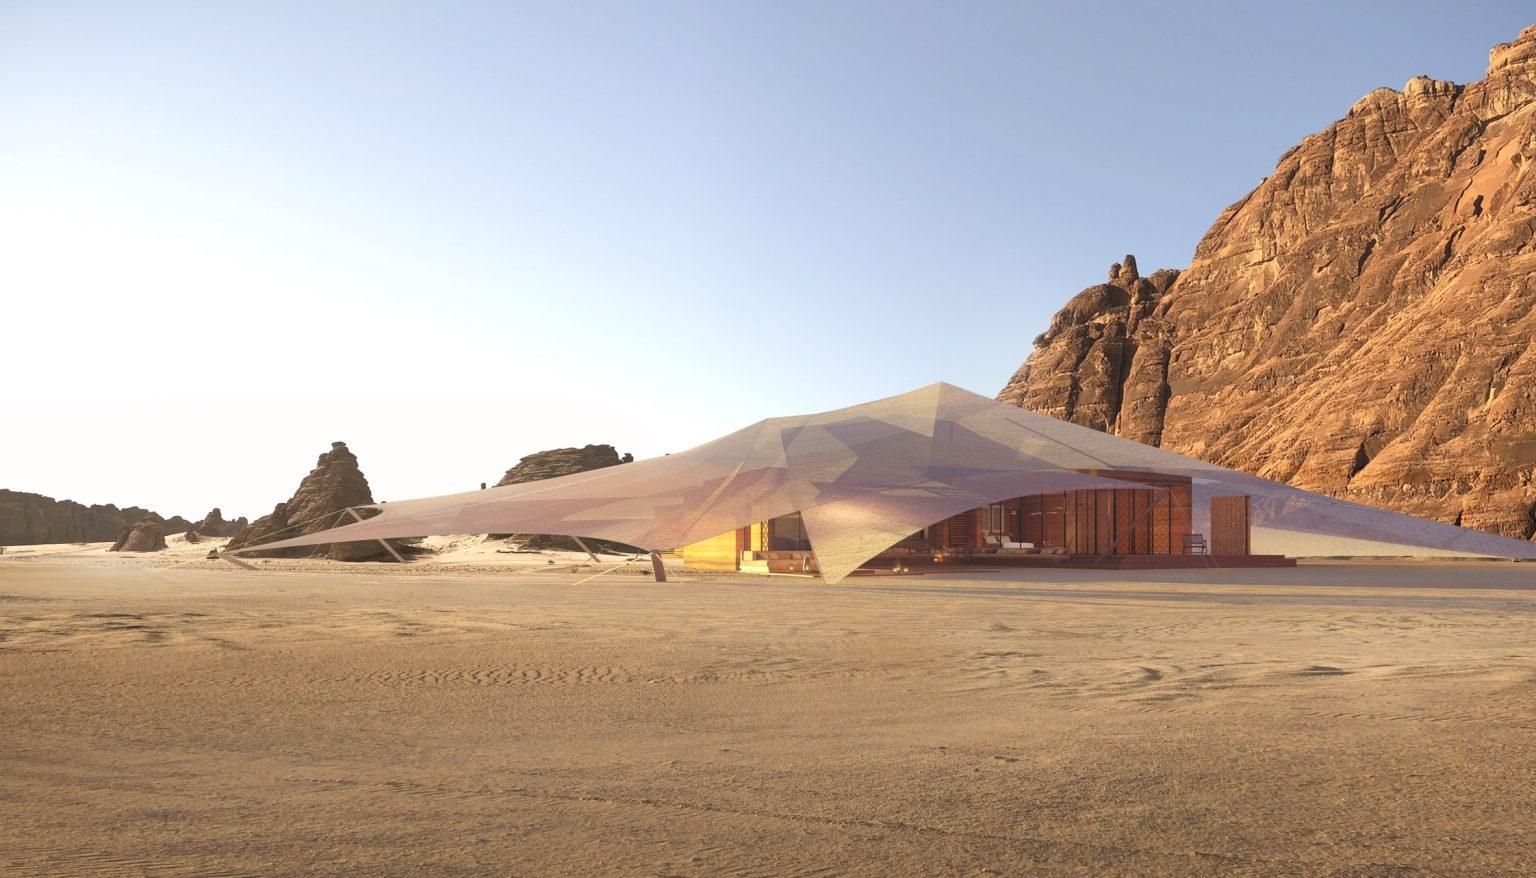 Палатка с гостиничными условиями: в Саудовской Аравии посреди пустыни появится новый курорт 